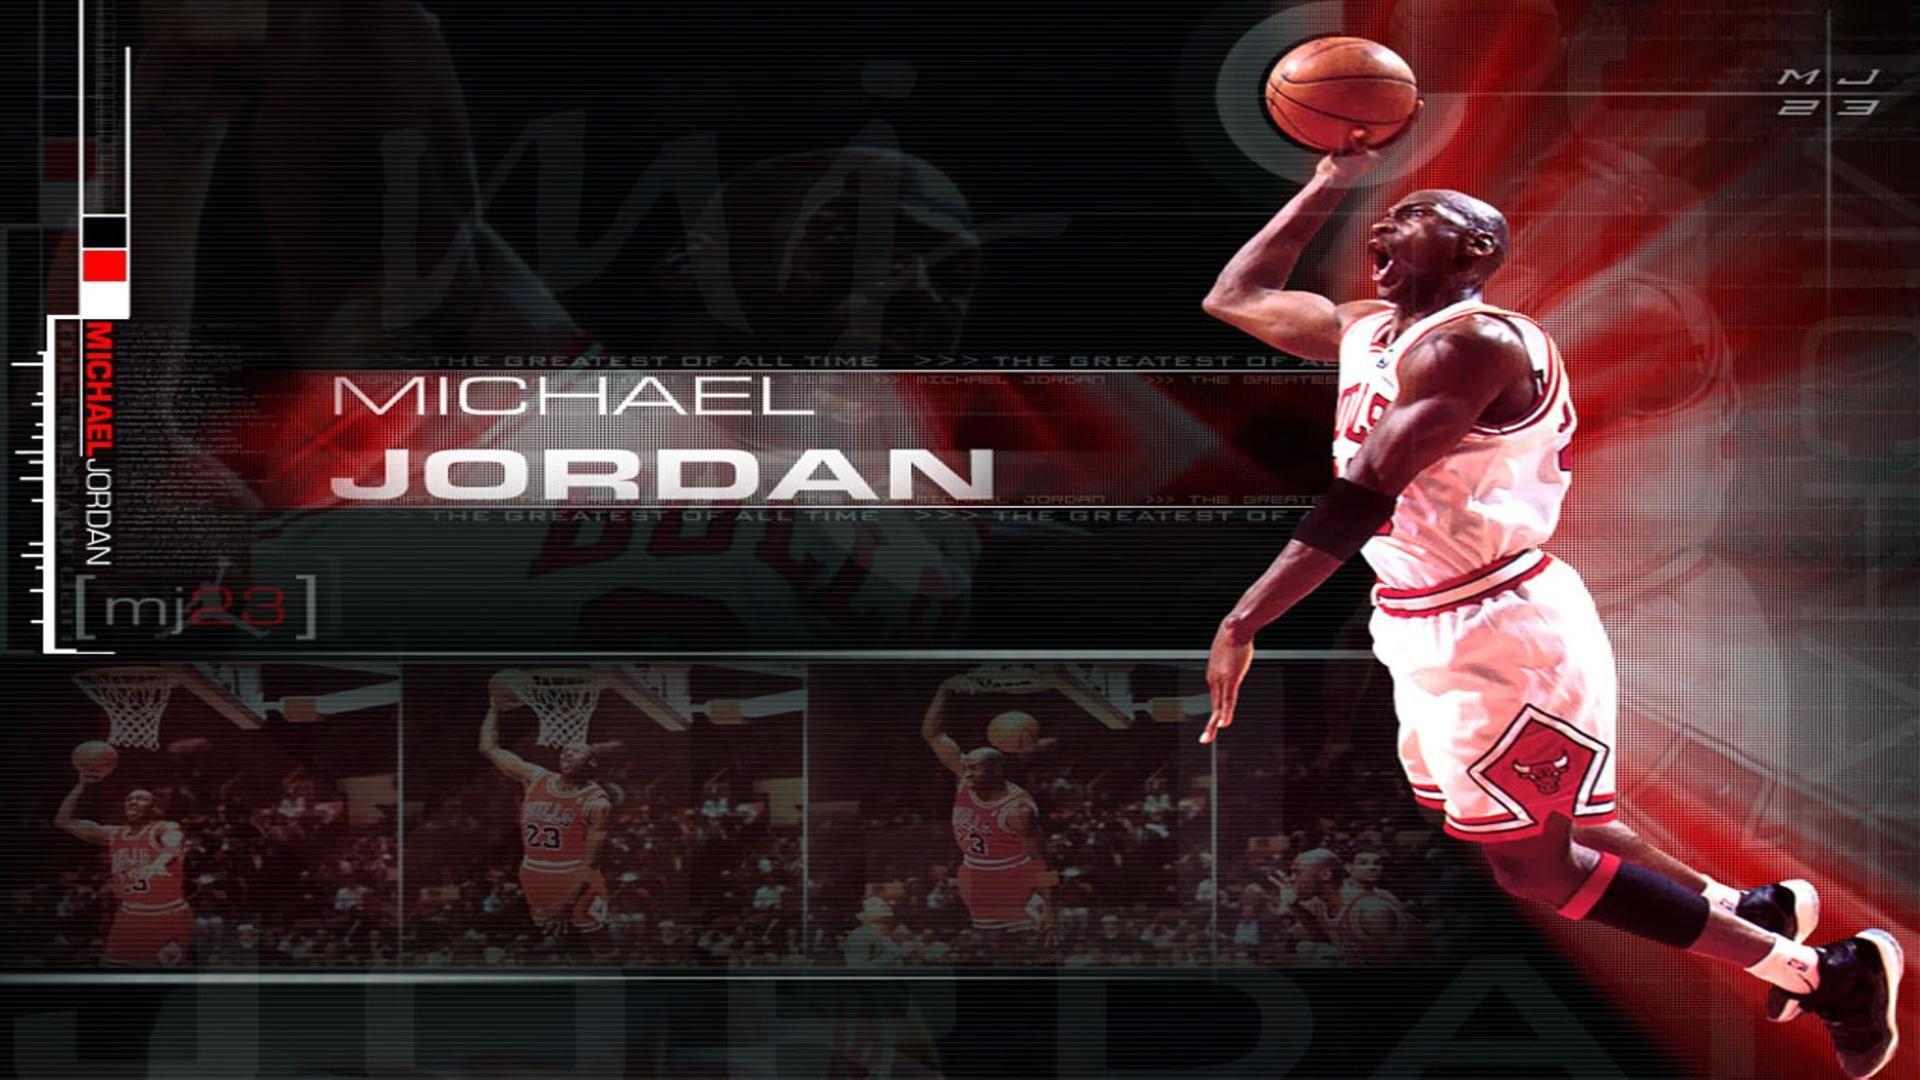 Jordan Desktop Background